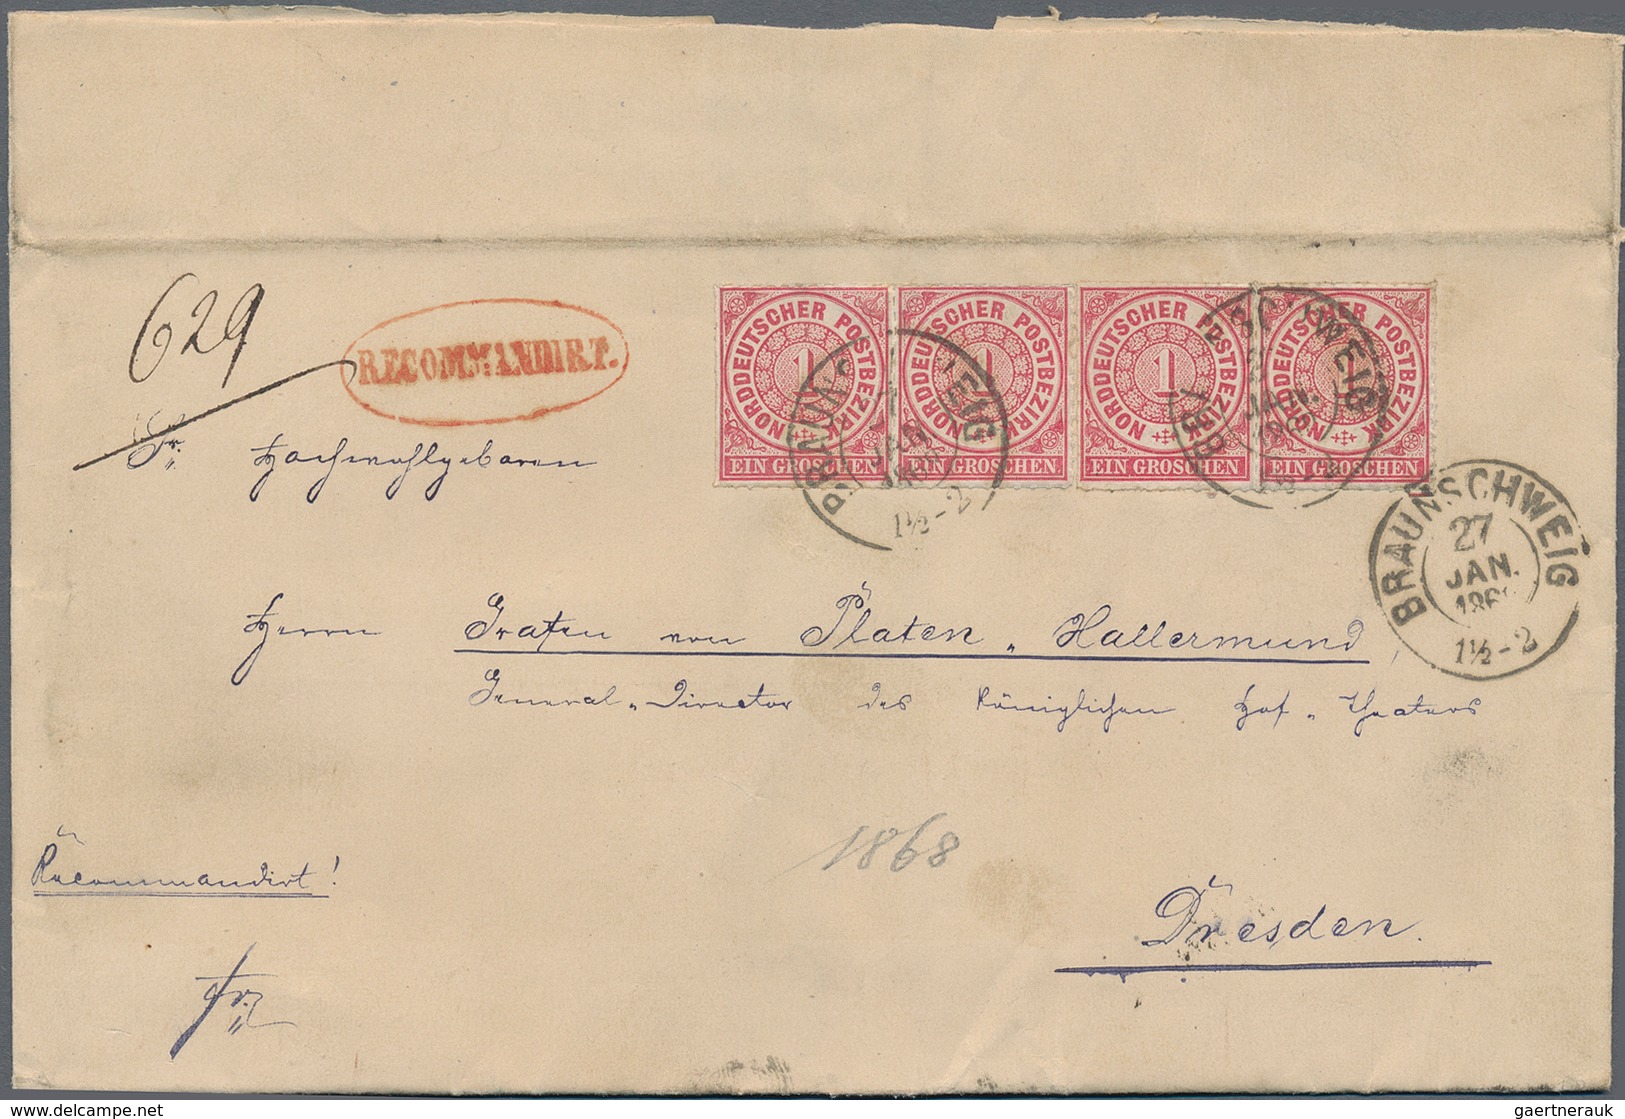 Nachlässe: 1850/1930, Sammlernachlaß mit ca. 150 Briefen, Teilbriefen und Vorderseiten aus Deutschla